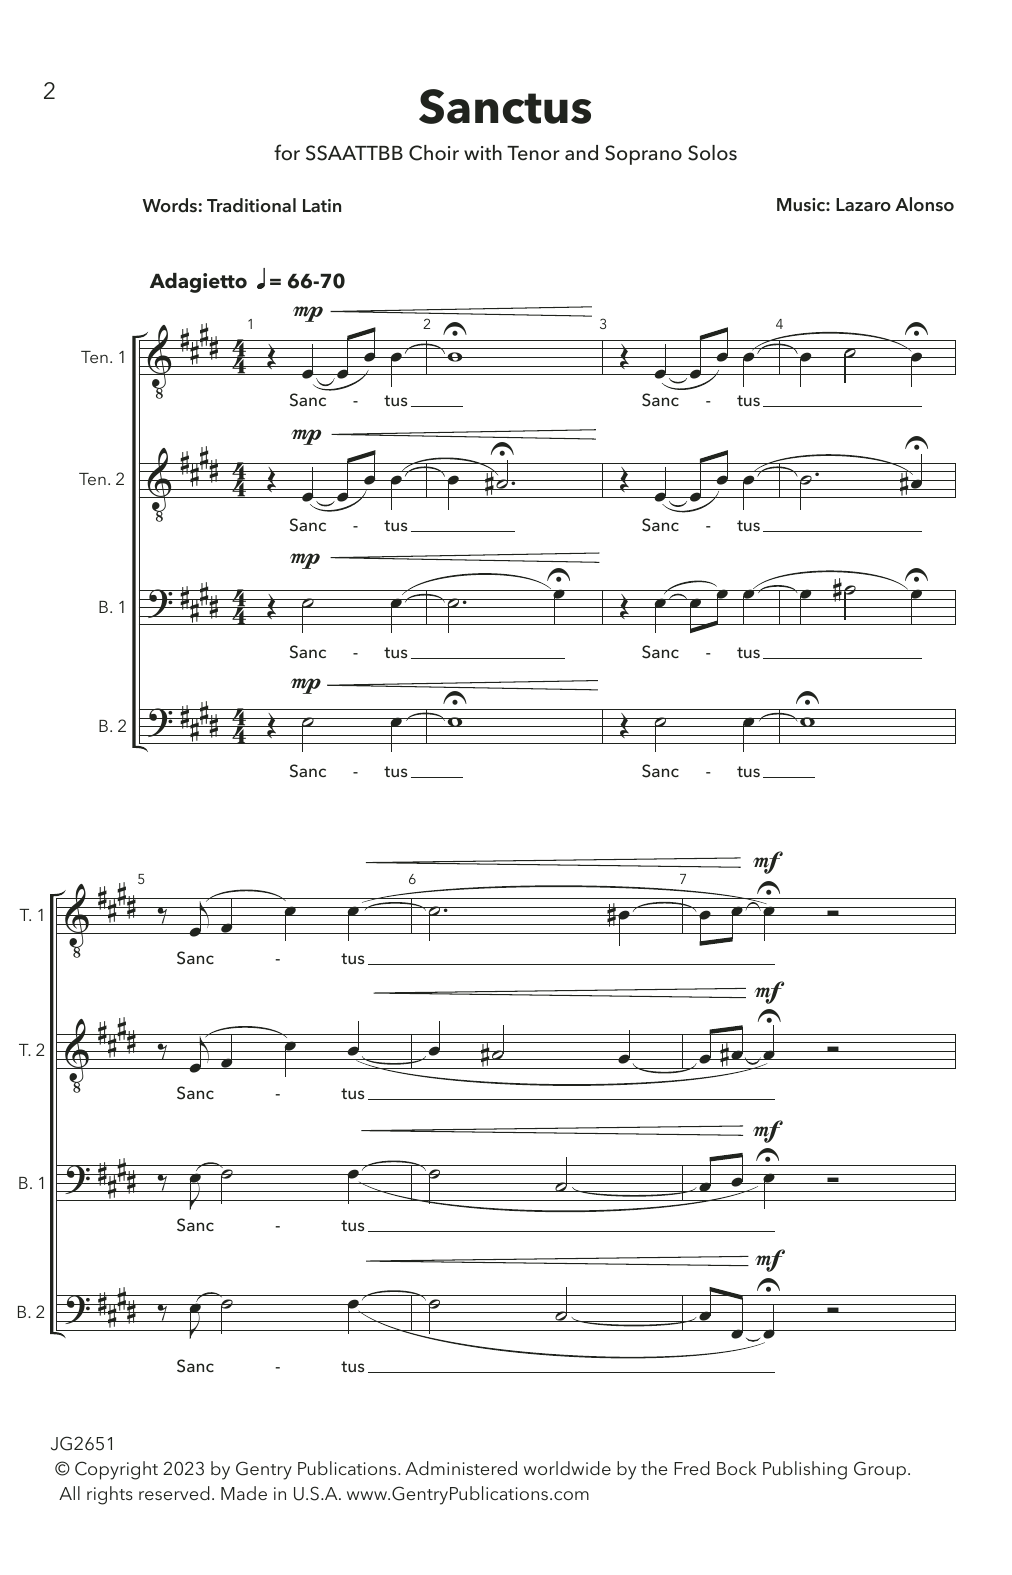 Lazaro Alonso Sanctus Sheet Music Notes & Chords for Choir - Download or Print PDF